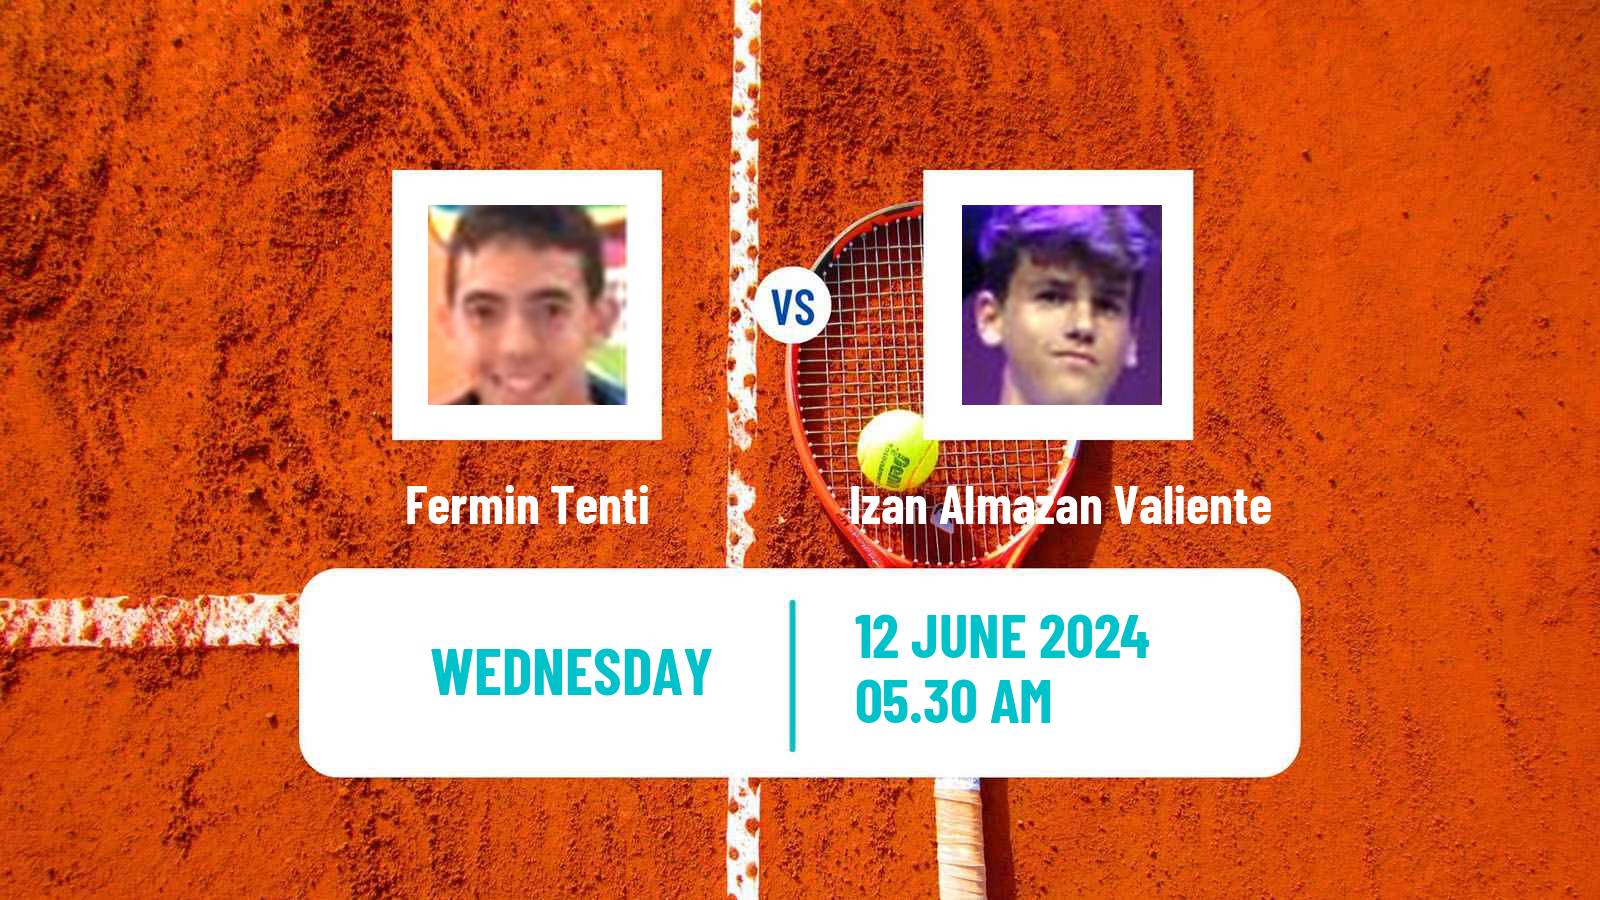 Tennis ITF M15 Koszalin Men 2024 Fermin Tenti - Izan Almazan Valiente